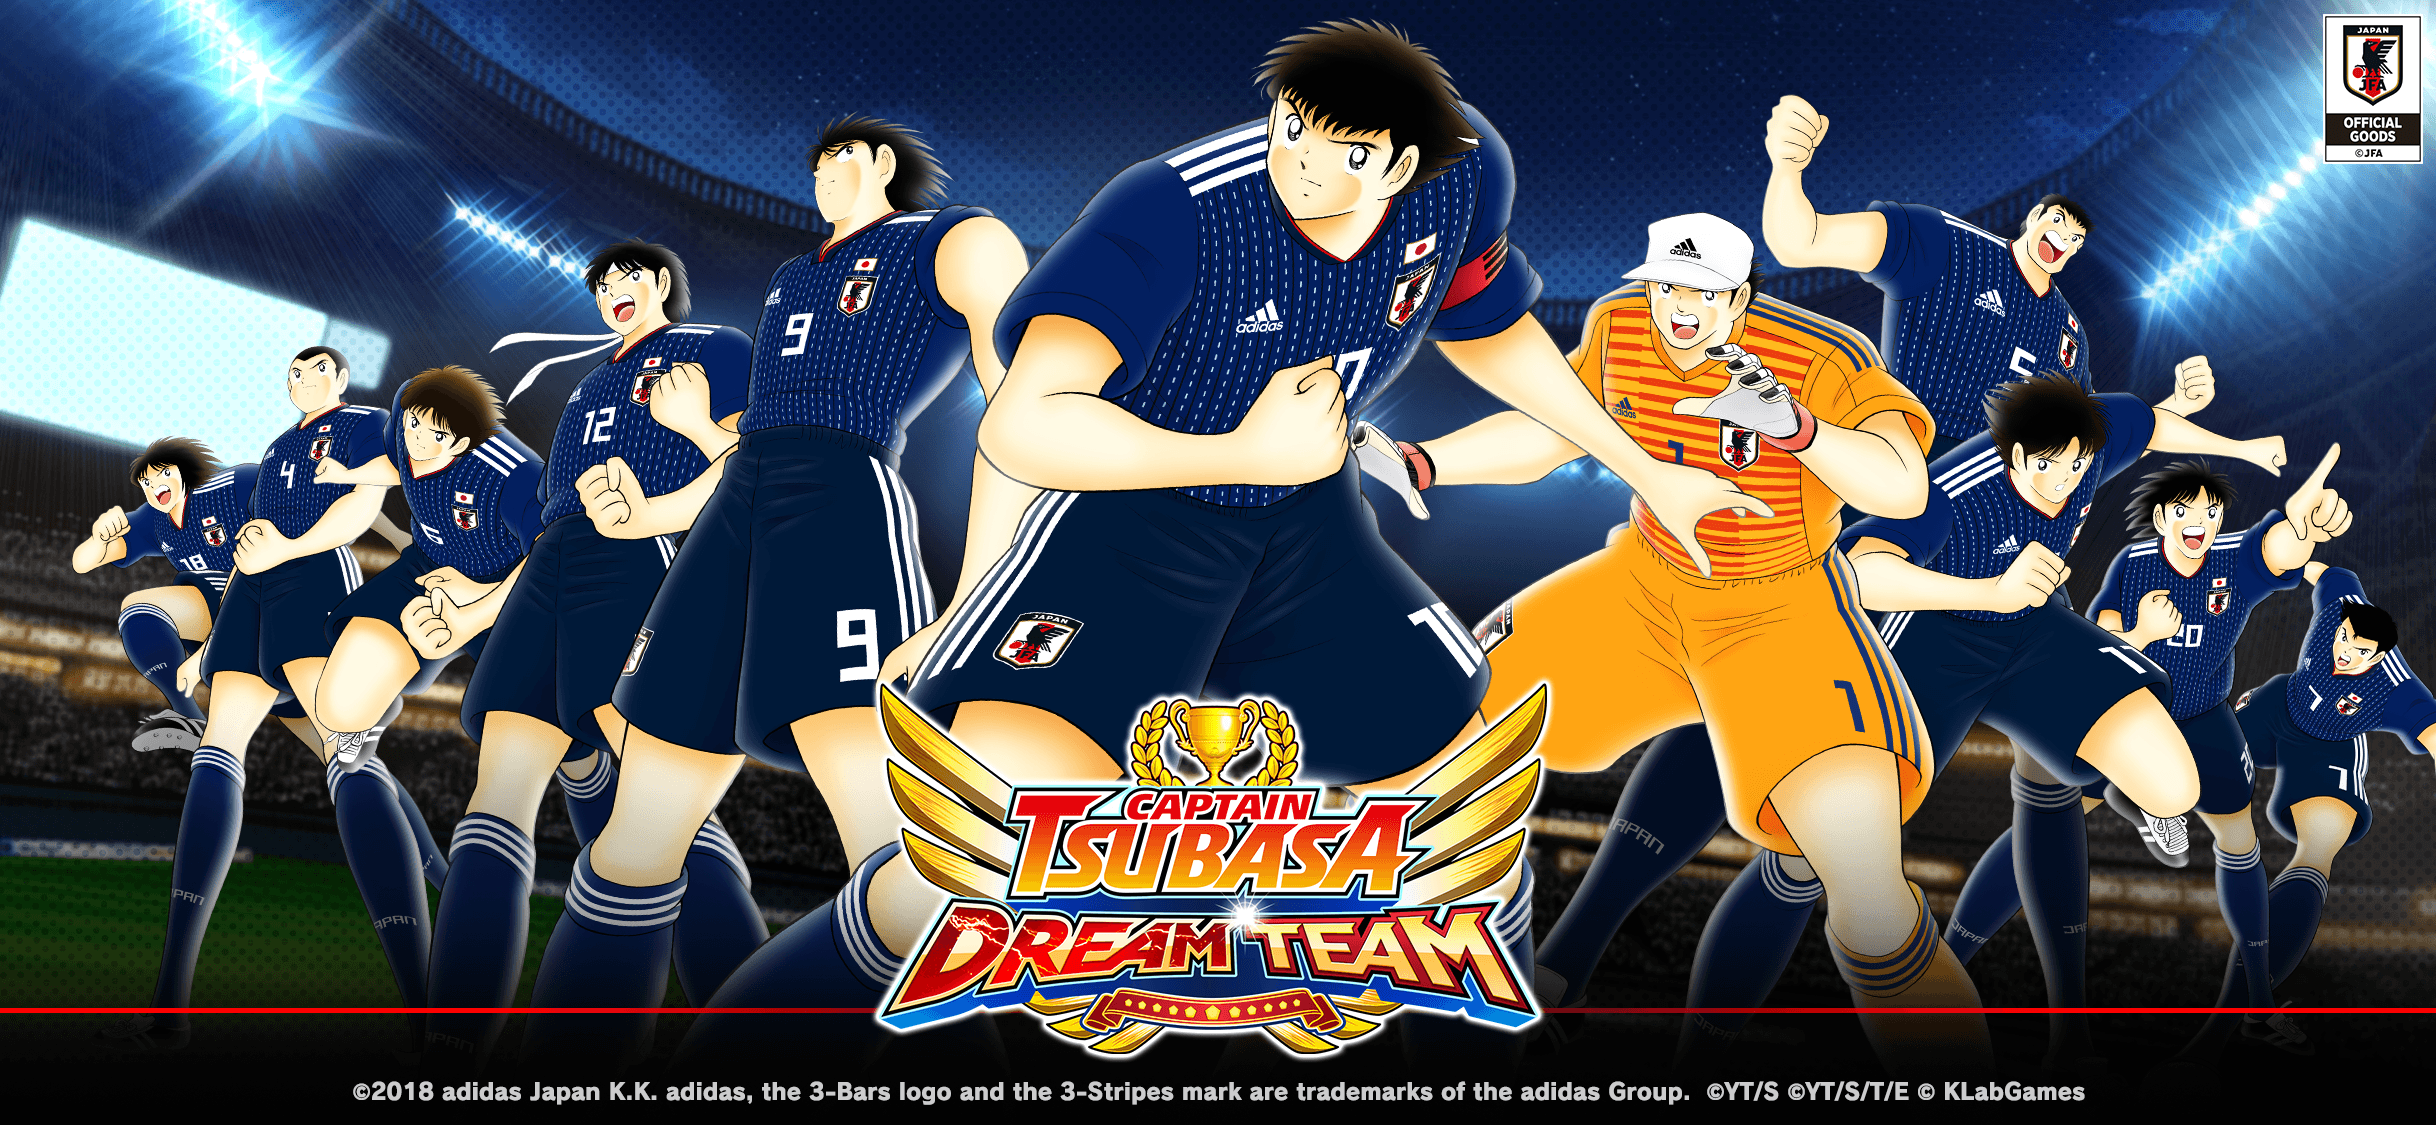 Captain Tsubasa: Dream Team” Kicks Off 1st Anniversary Celebration